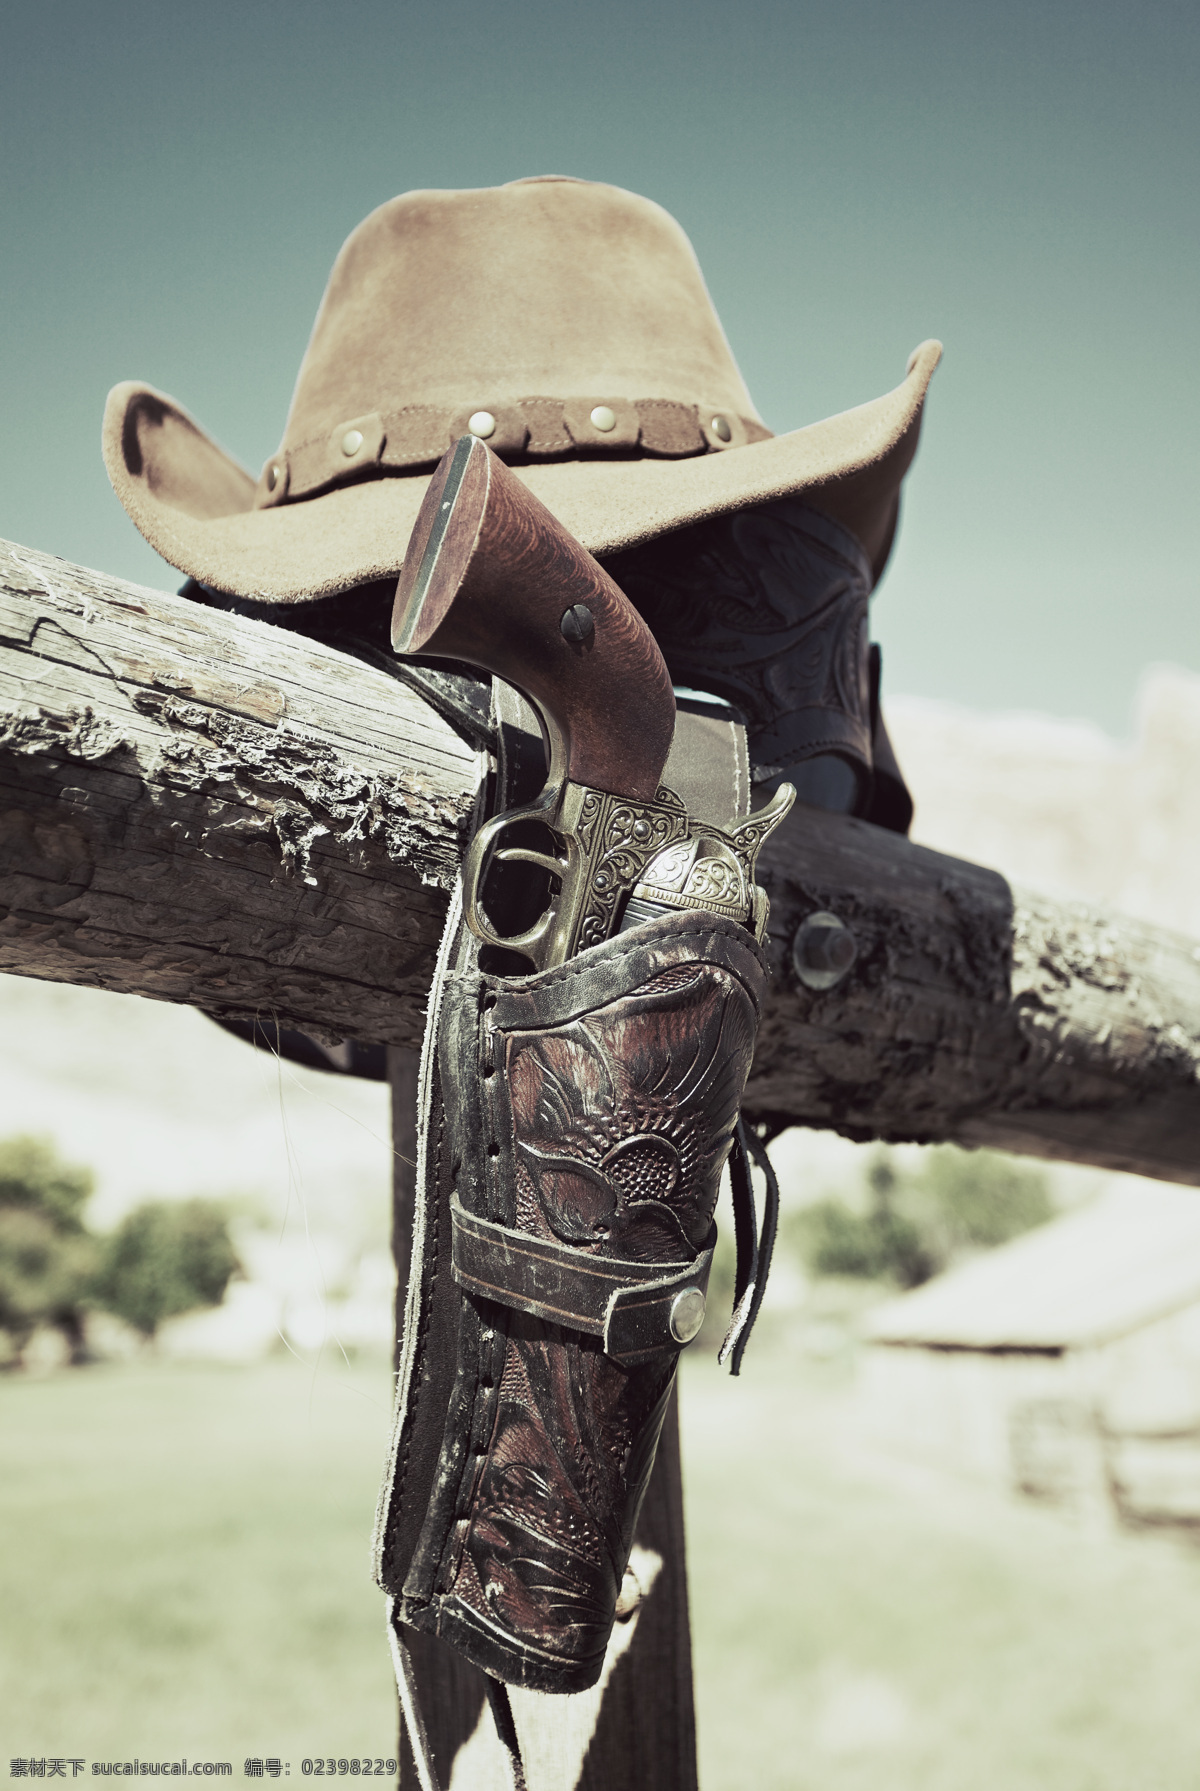 木杆 上 帽子 手枪 牛仔帽子 转轮手枪 花纹 牛仔 西部牛仔 美国西部牛仔 其他类别 生活百科 灰色